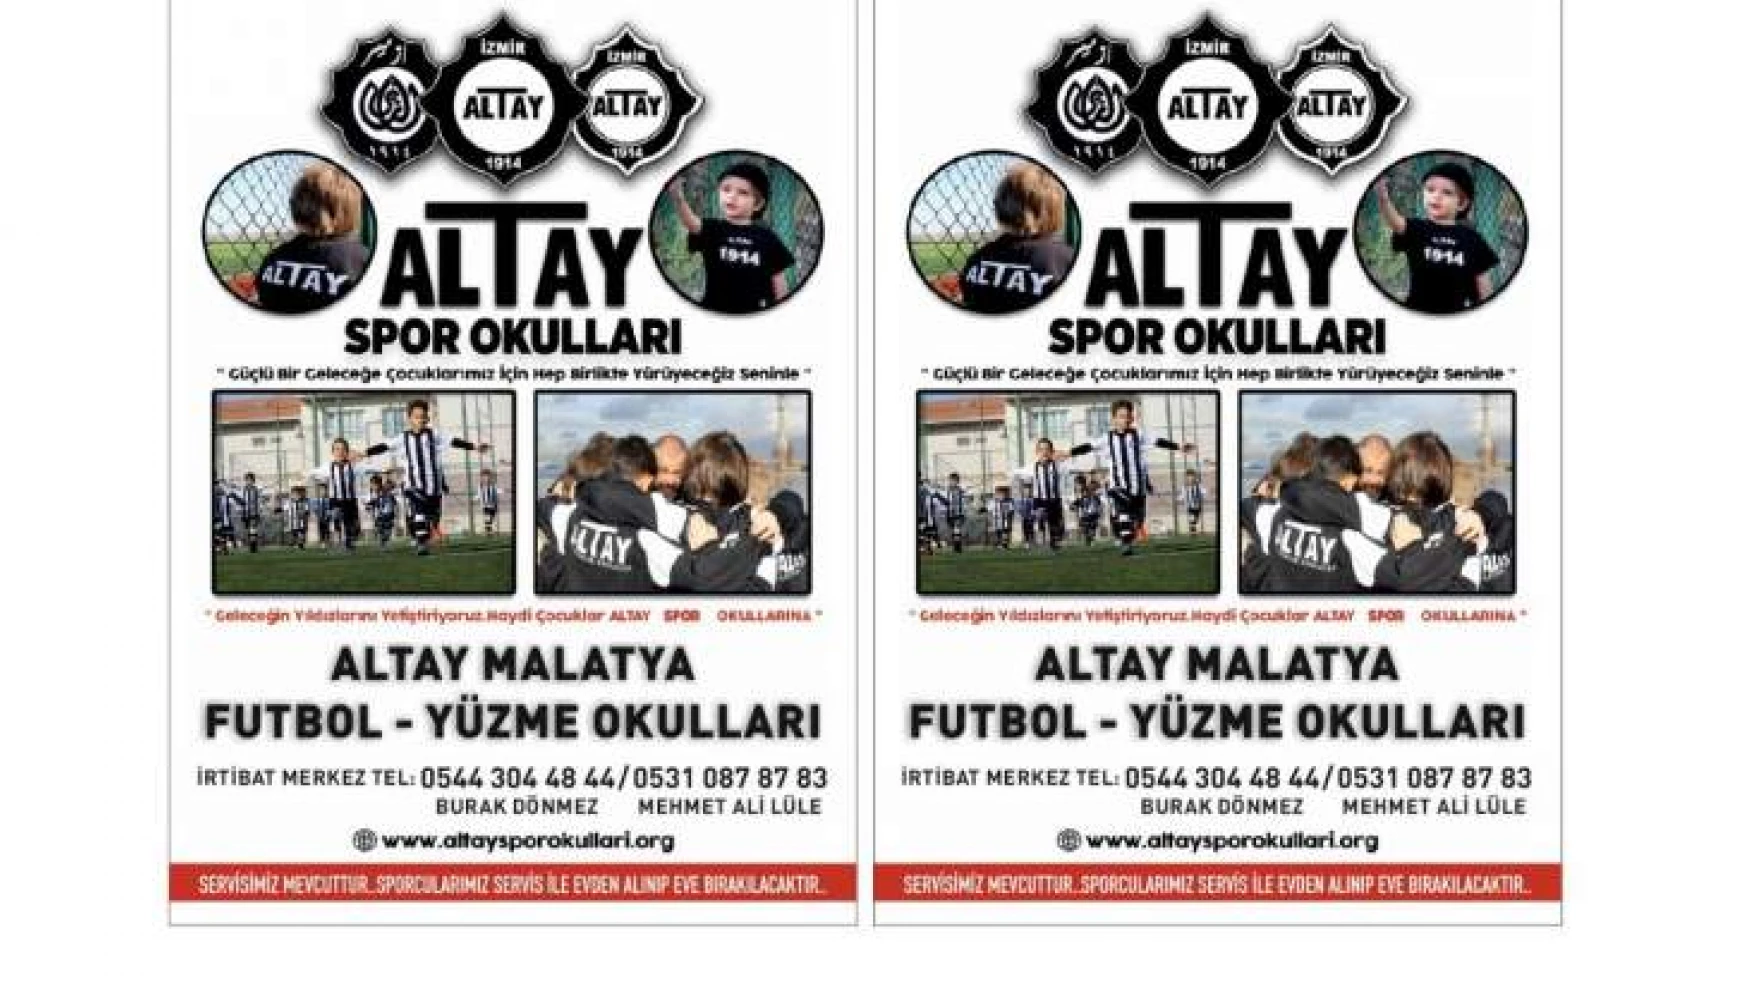 Altay Spor Kulübü Malatya'da Faaliyetlere Başladı